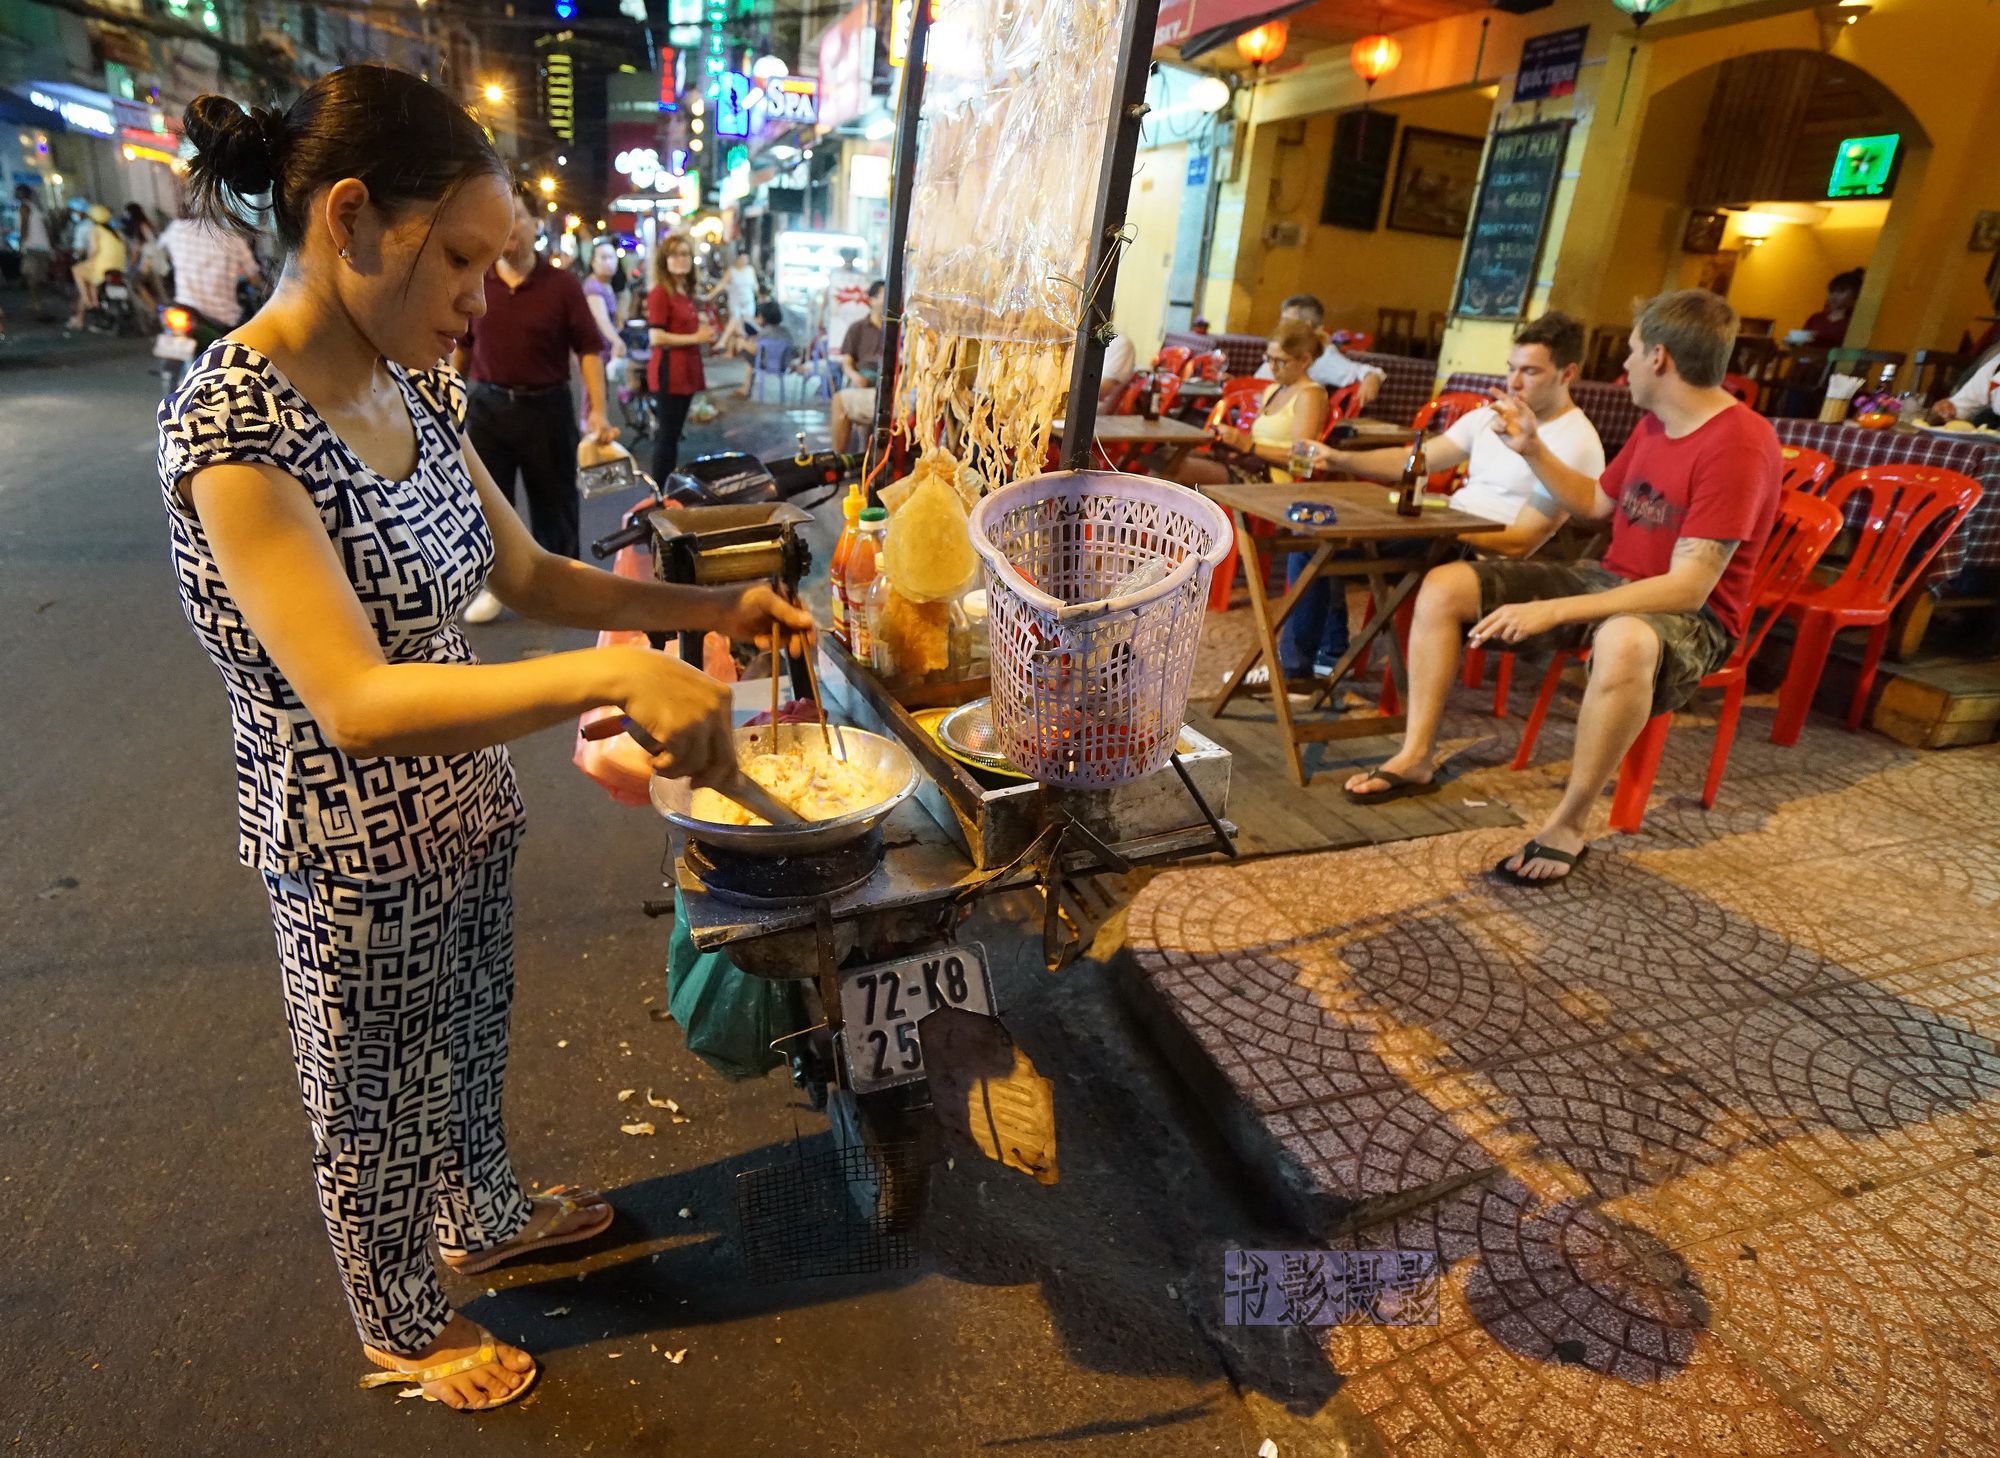 越嘉喜盐焗原味腰果 越南特产一级美味腰果净重500克罐装腰果-阿里巴巴